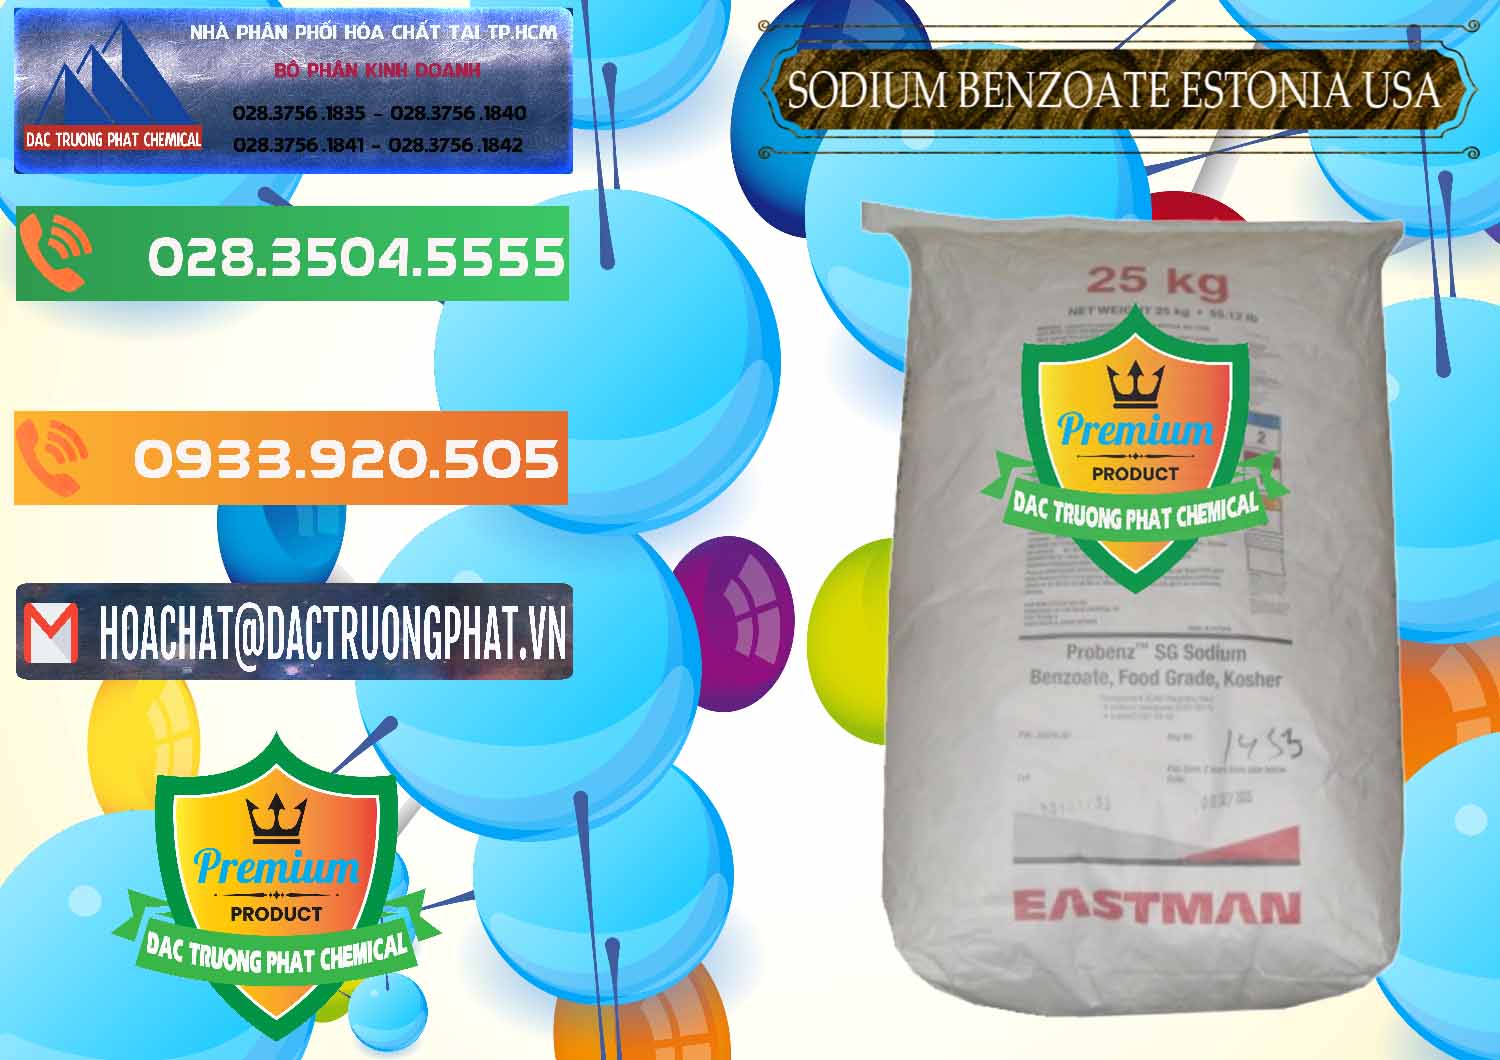 Nơi chuyên cung ứng - bán Sodium Benzoate - Mốc Bột Estonia Mỹ USA - 0468 - Công ty kinh doanh ( cung cấp ) hóa chất tại TP.HCM - hoachatxulynuoc.com.vn